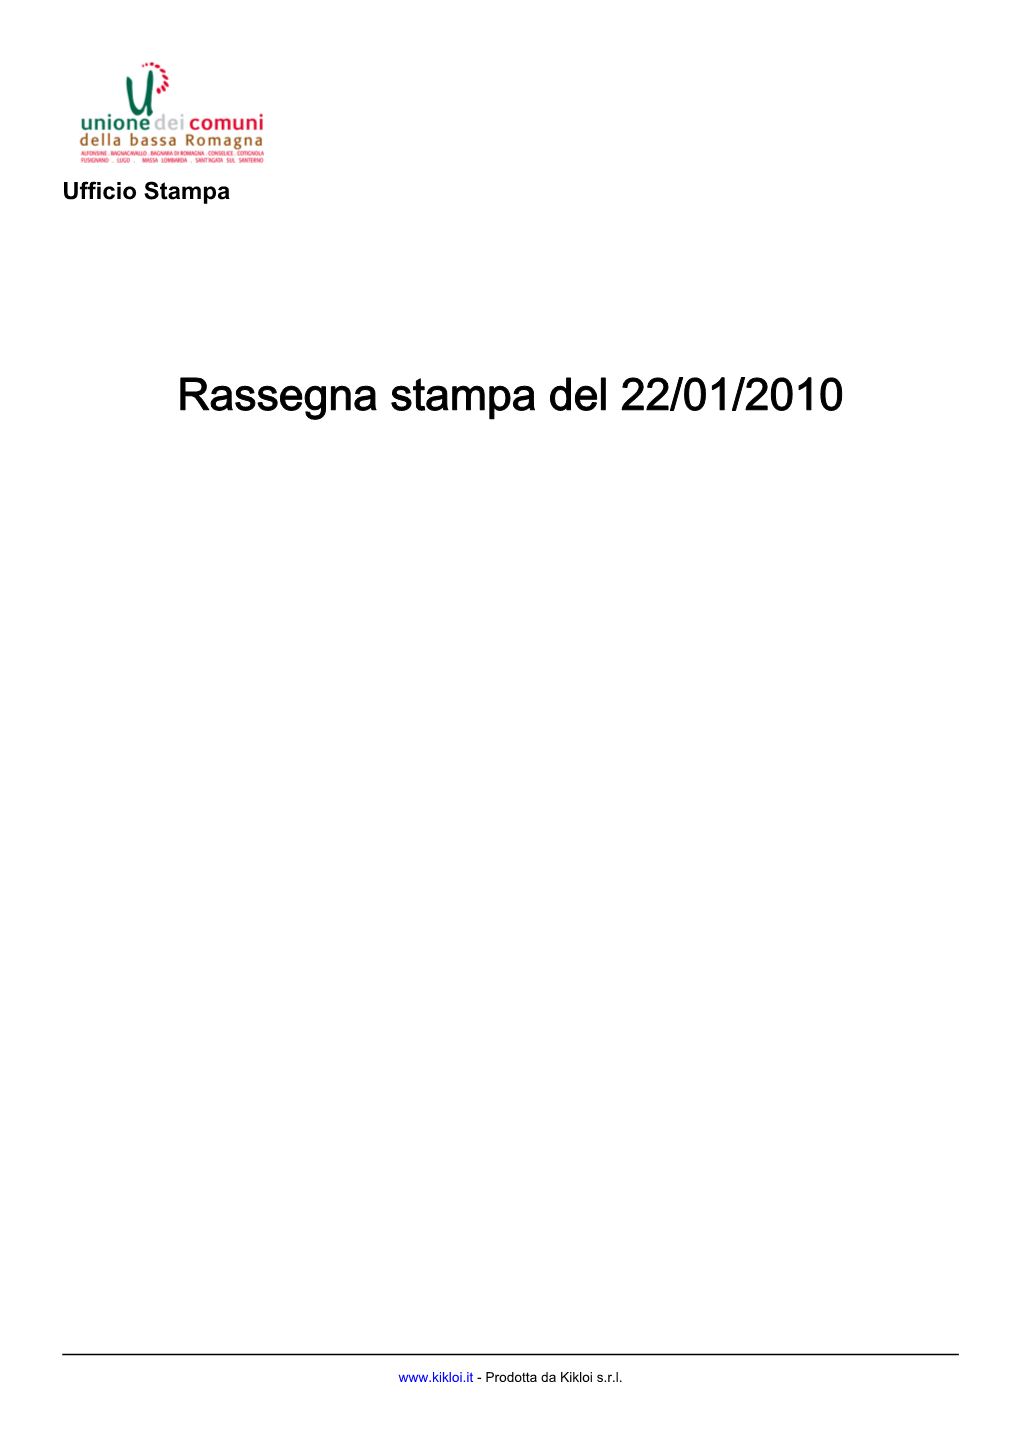 Rassegna Stampa Del 20100122